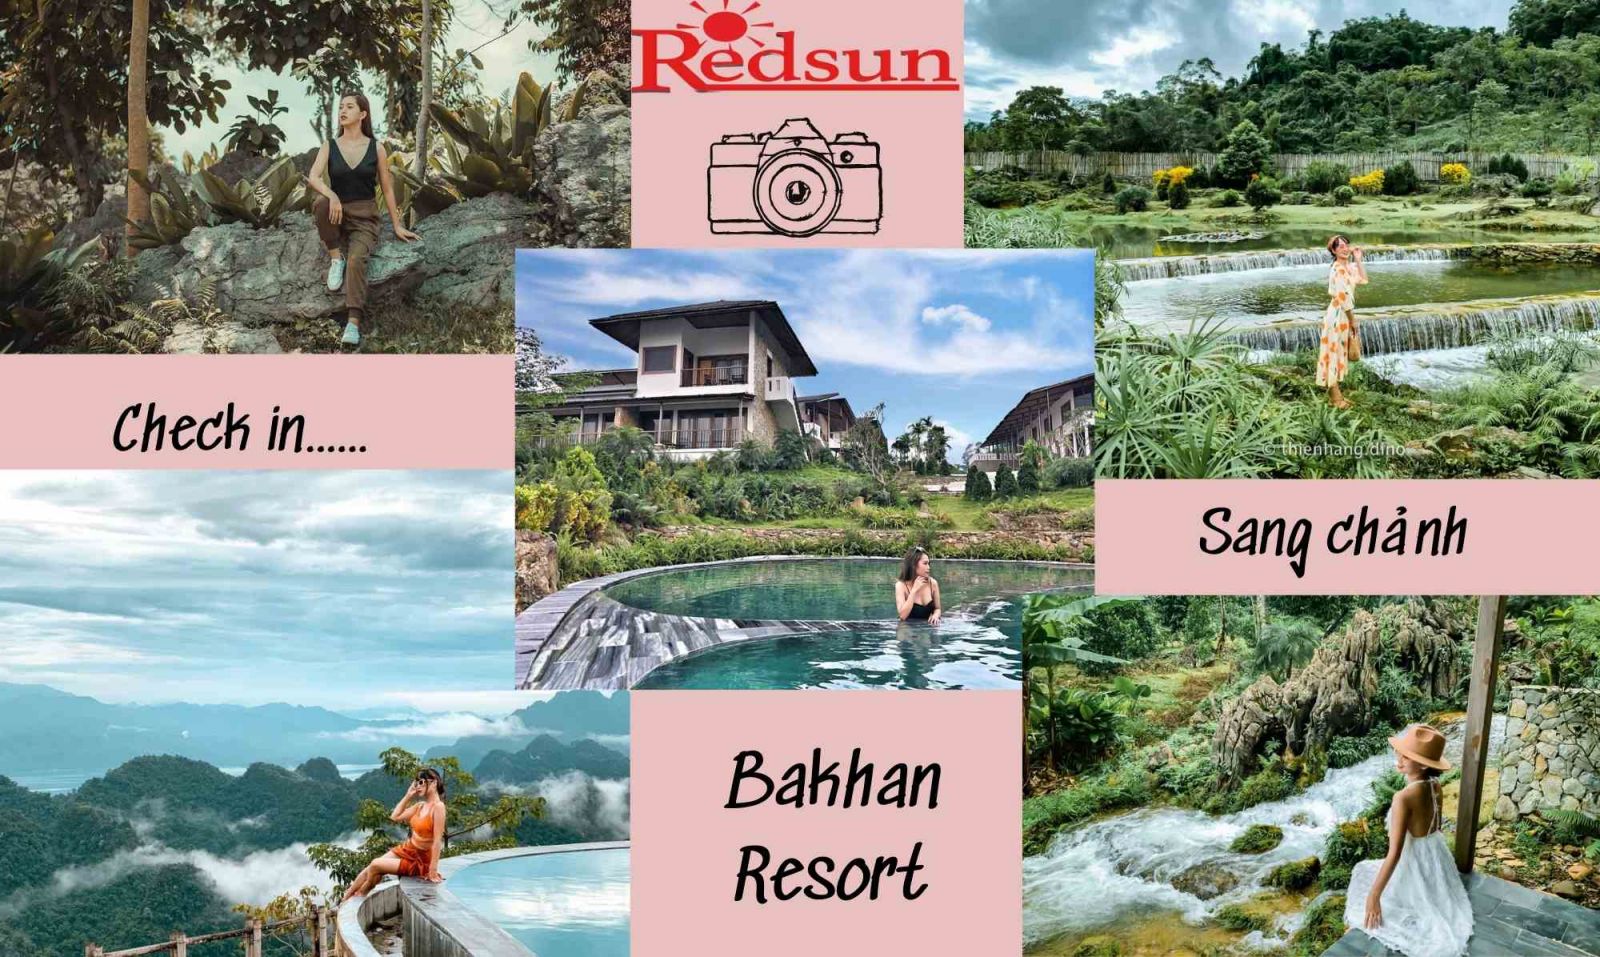 Red Sun tổ chức tour du lịch nghỉ dưỡng tại Bakhan Resort Hòa Bình 02 ngày